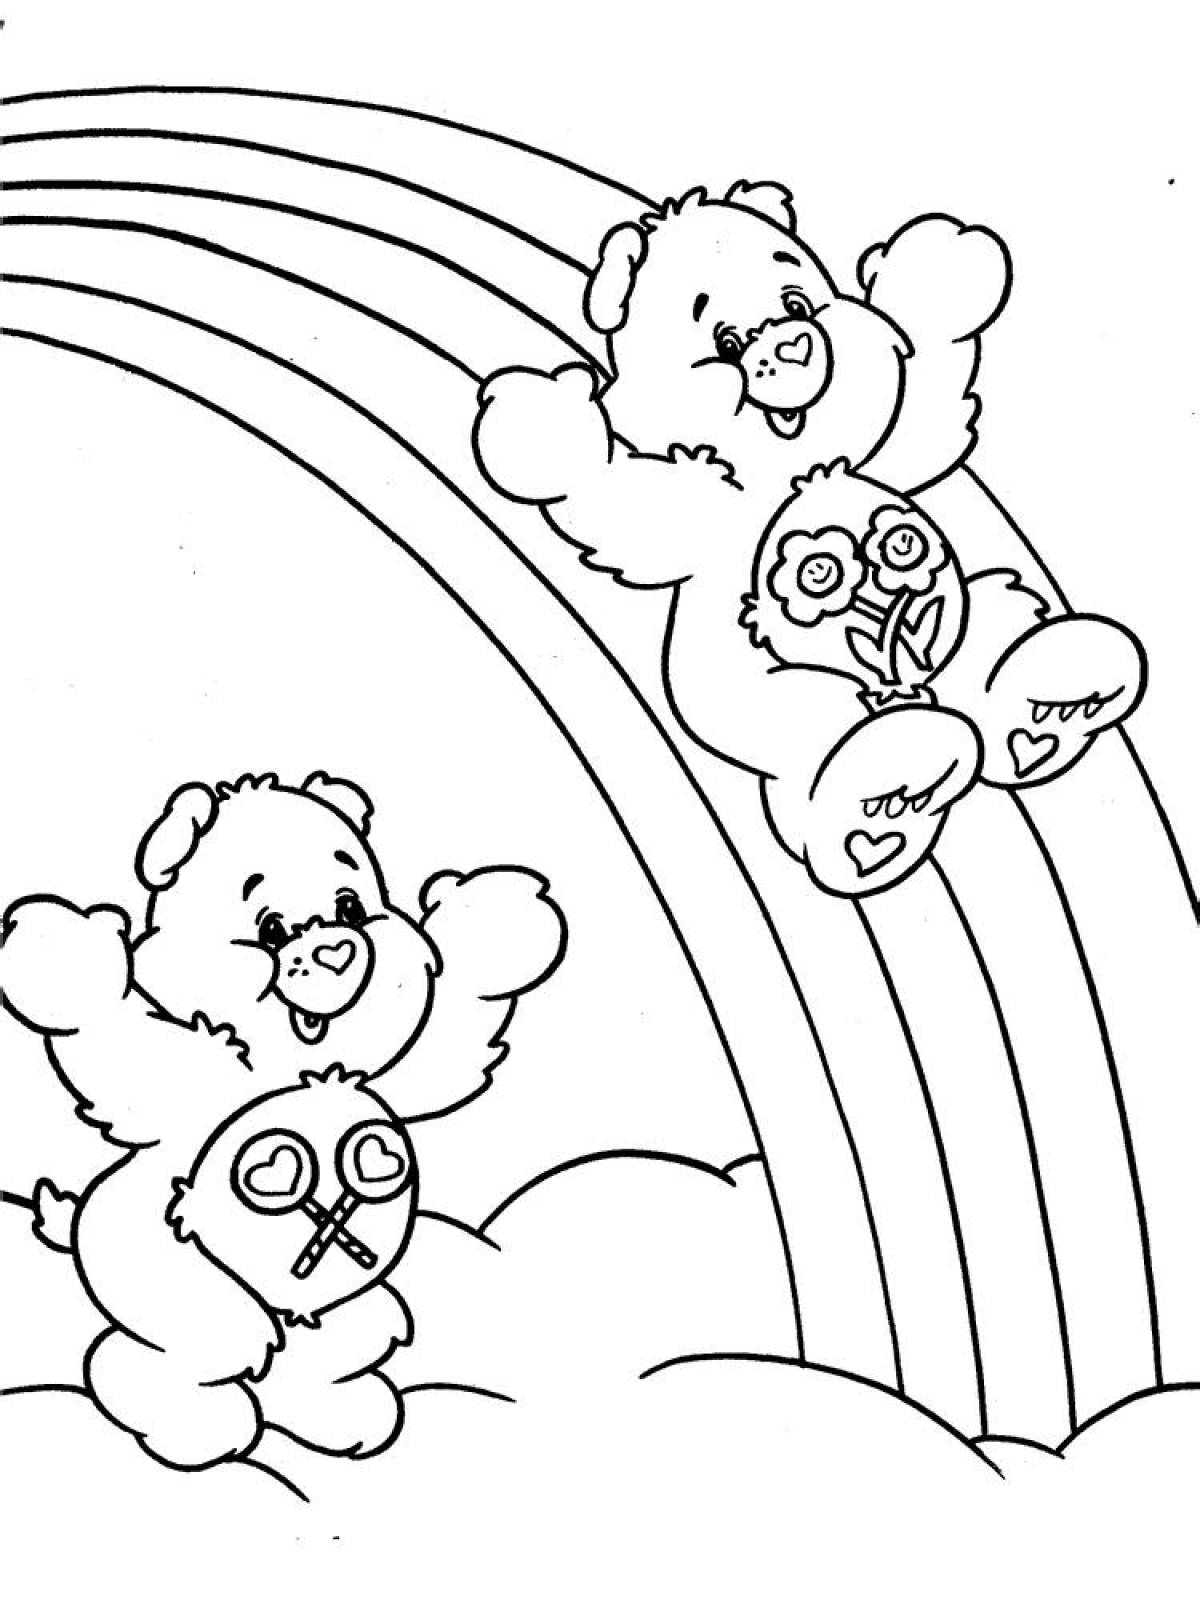 Teddy bears ride on the rainbow